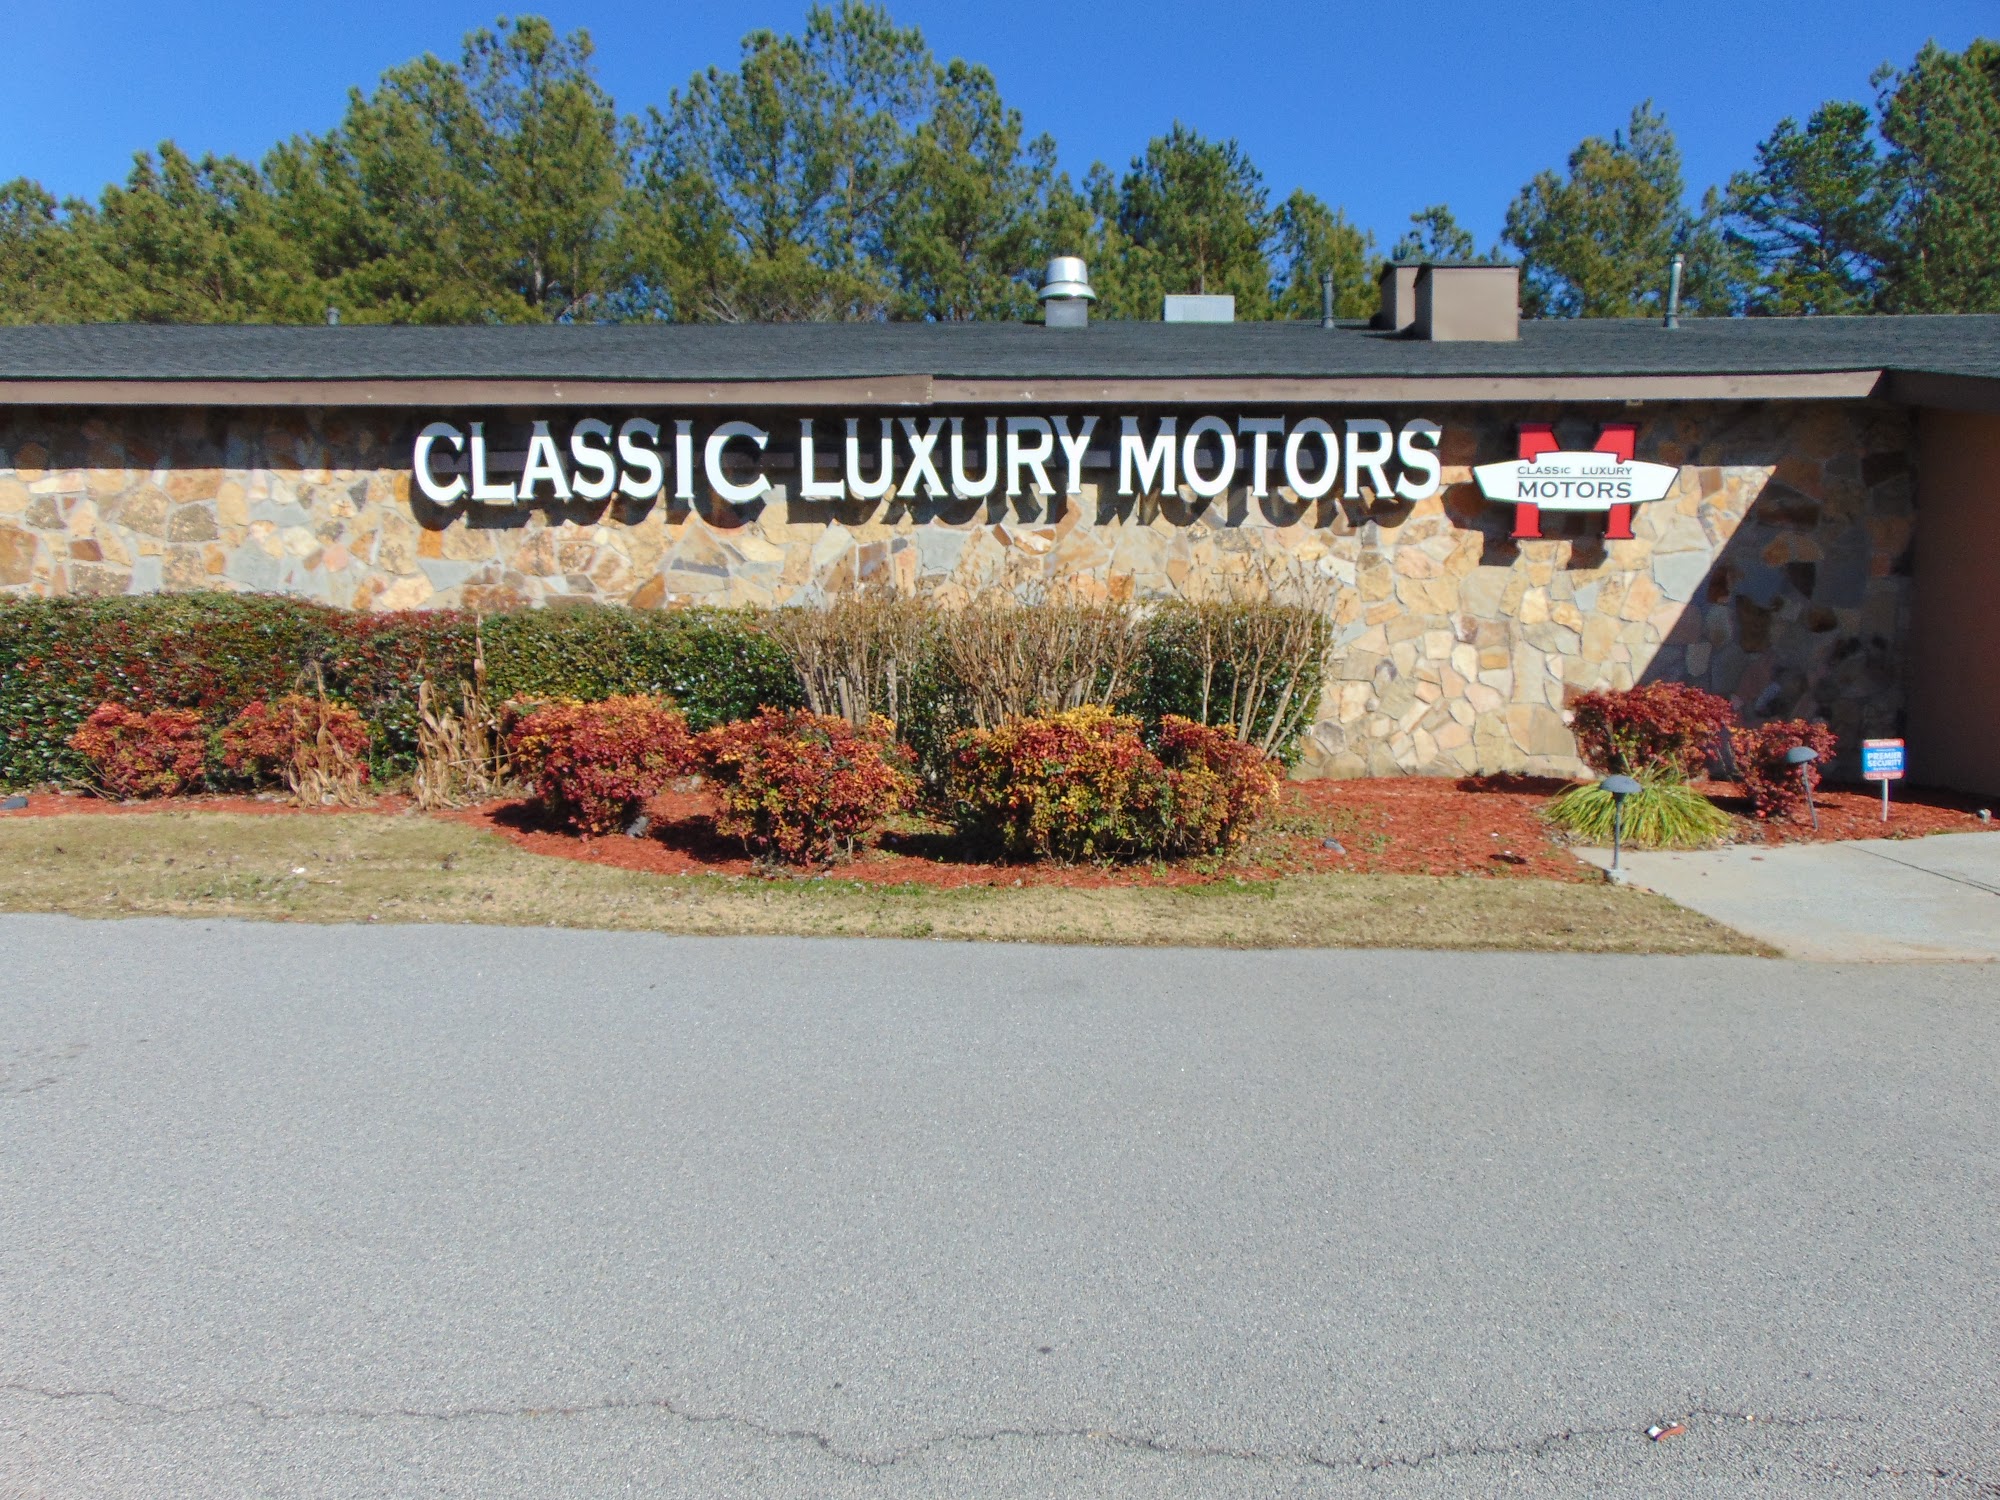 Classic Luxury Motors